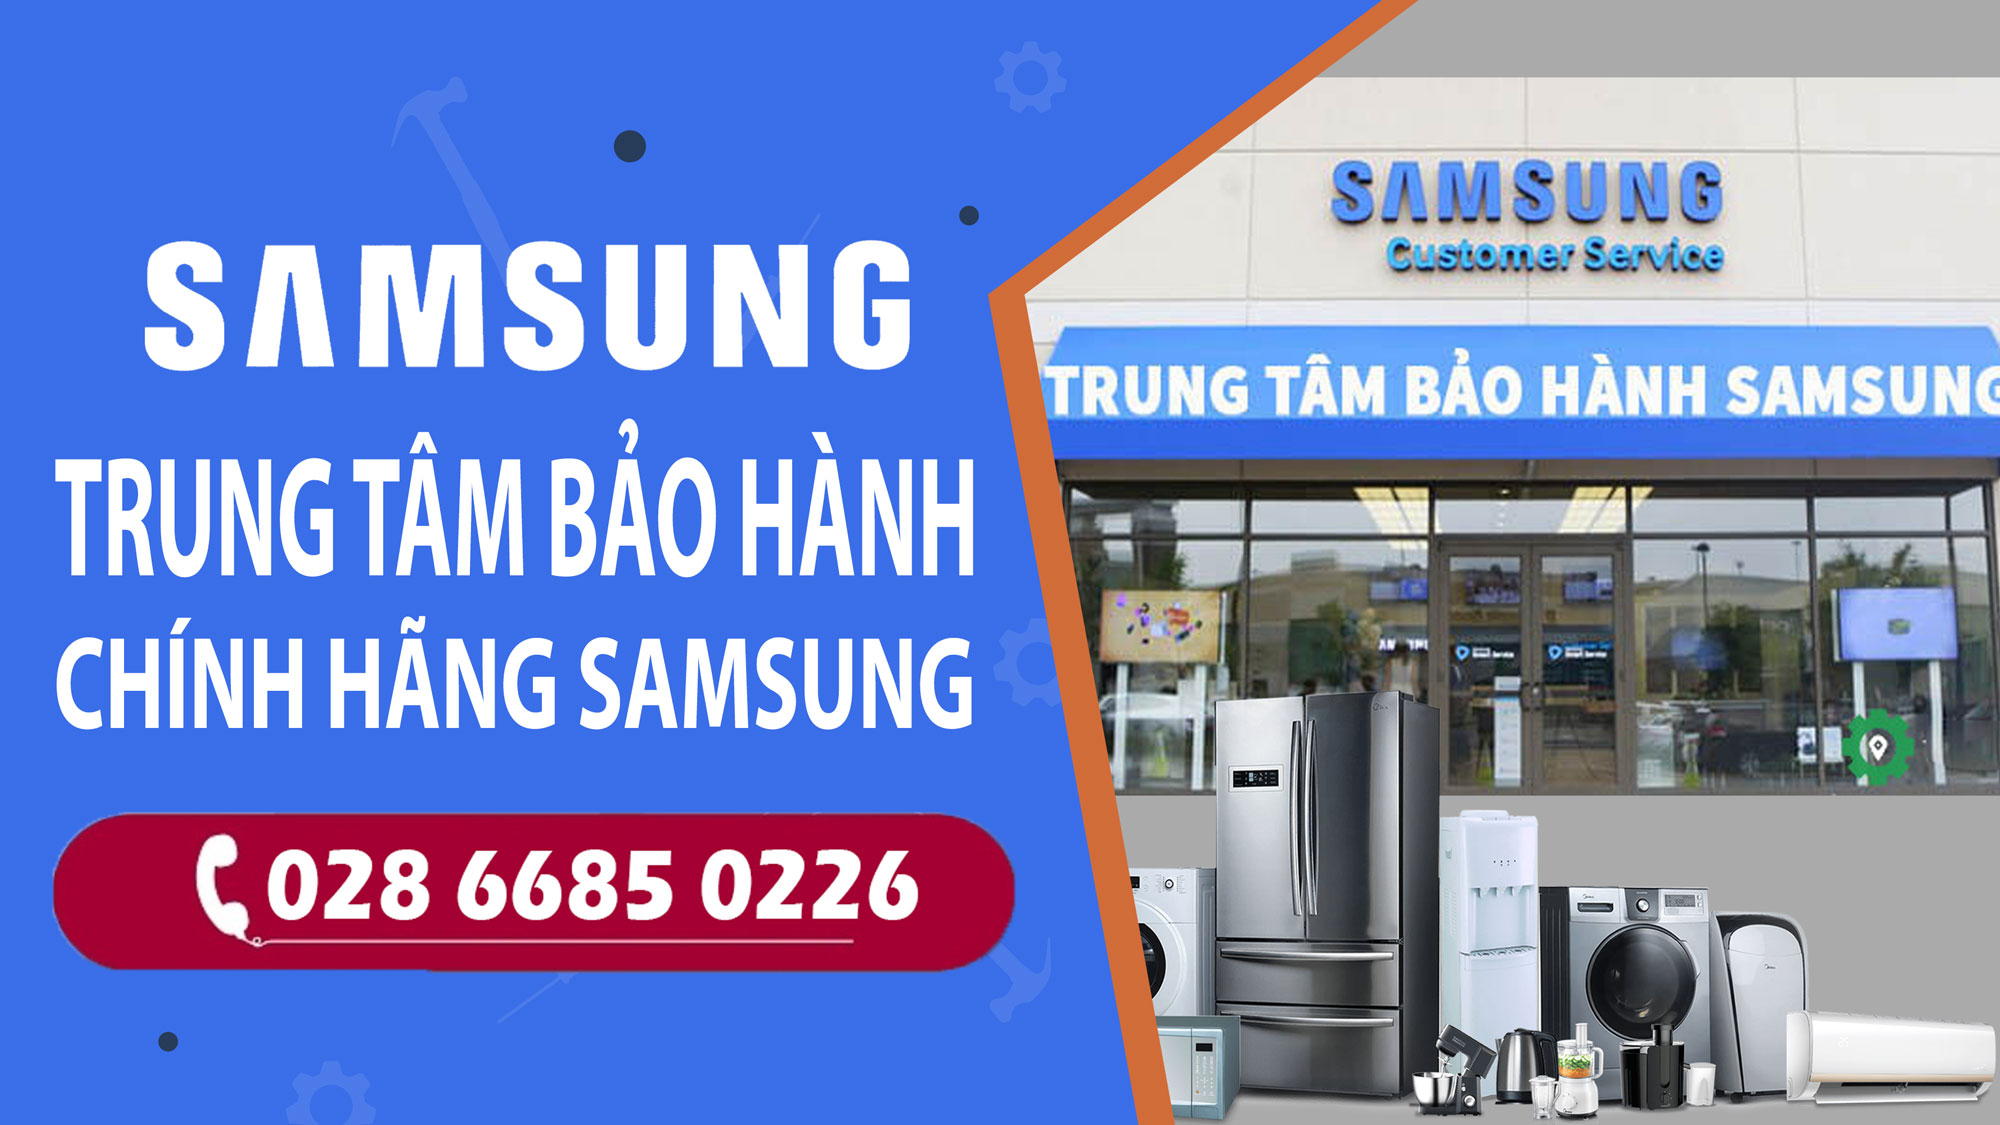 Trung tâm bảo hành sửa chữa tivi Samsung TPHCM - Điện máy Thiên Hoà